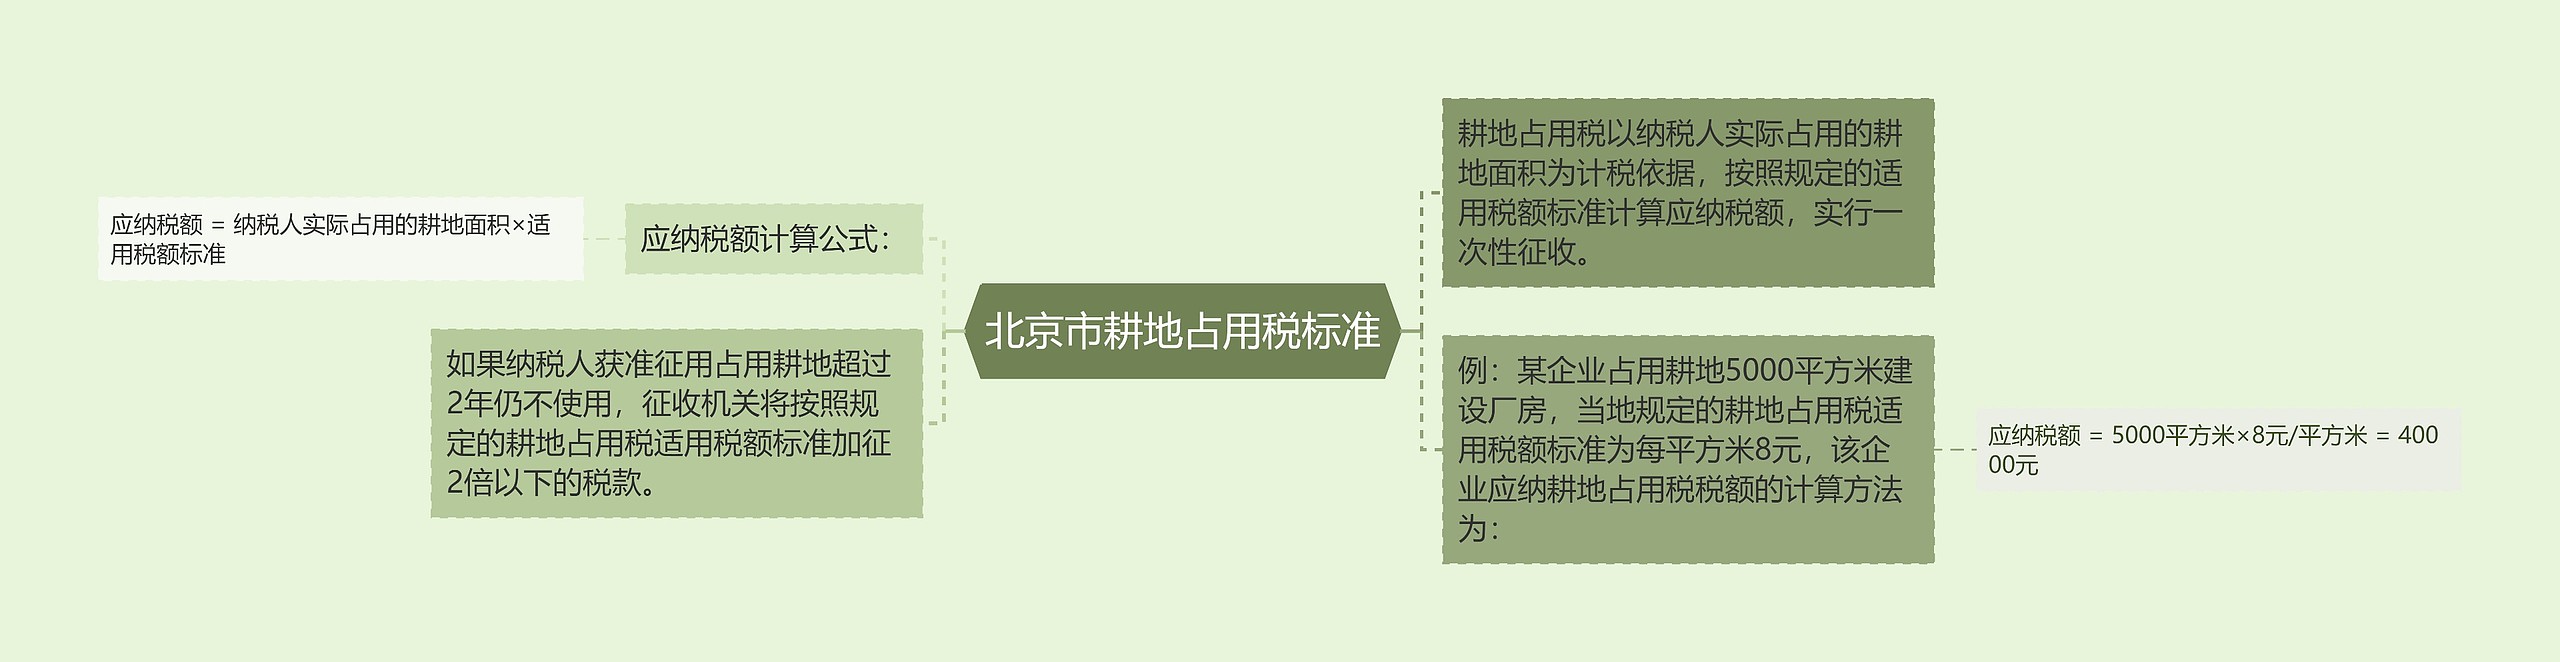 北京市耕地占用税标准